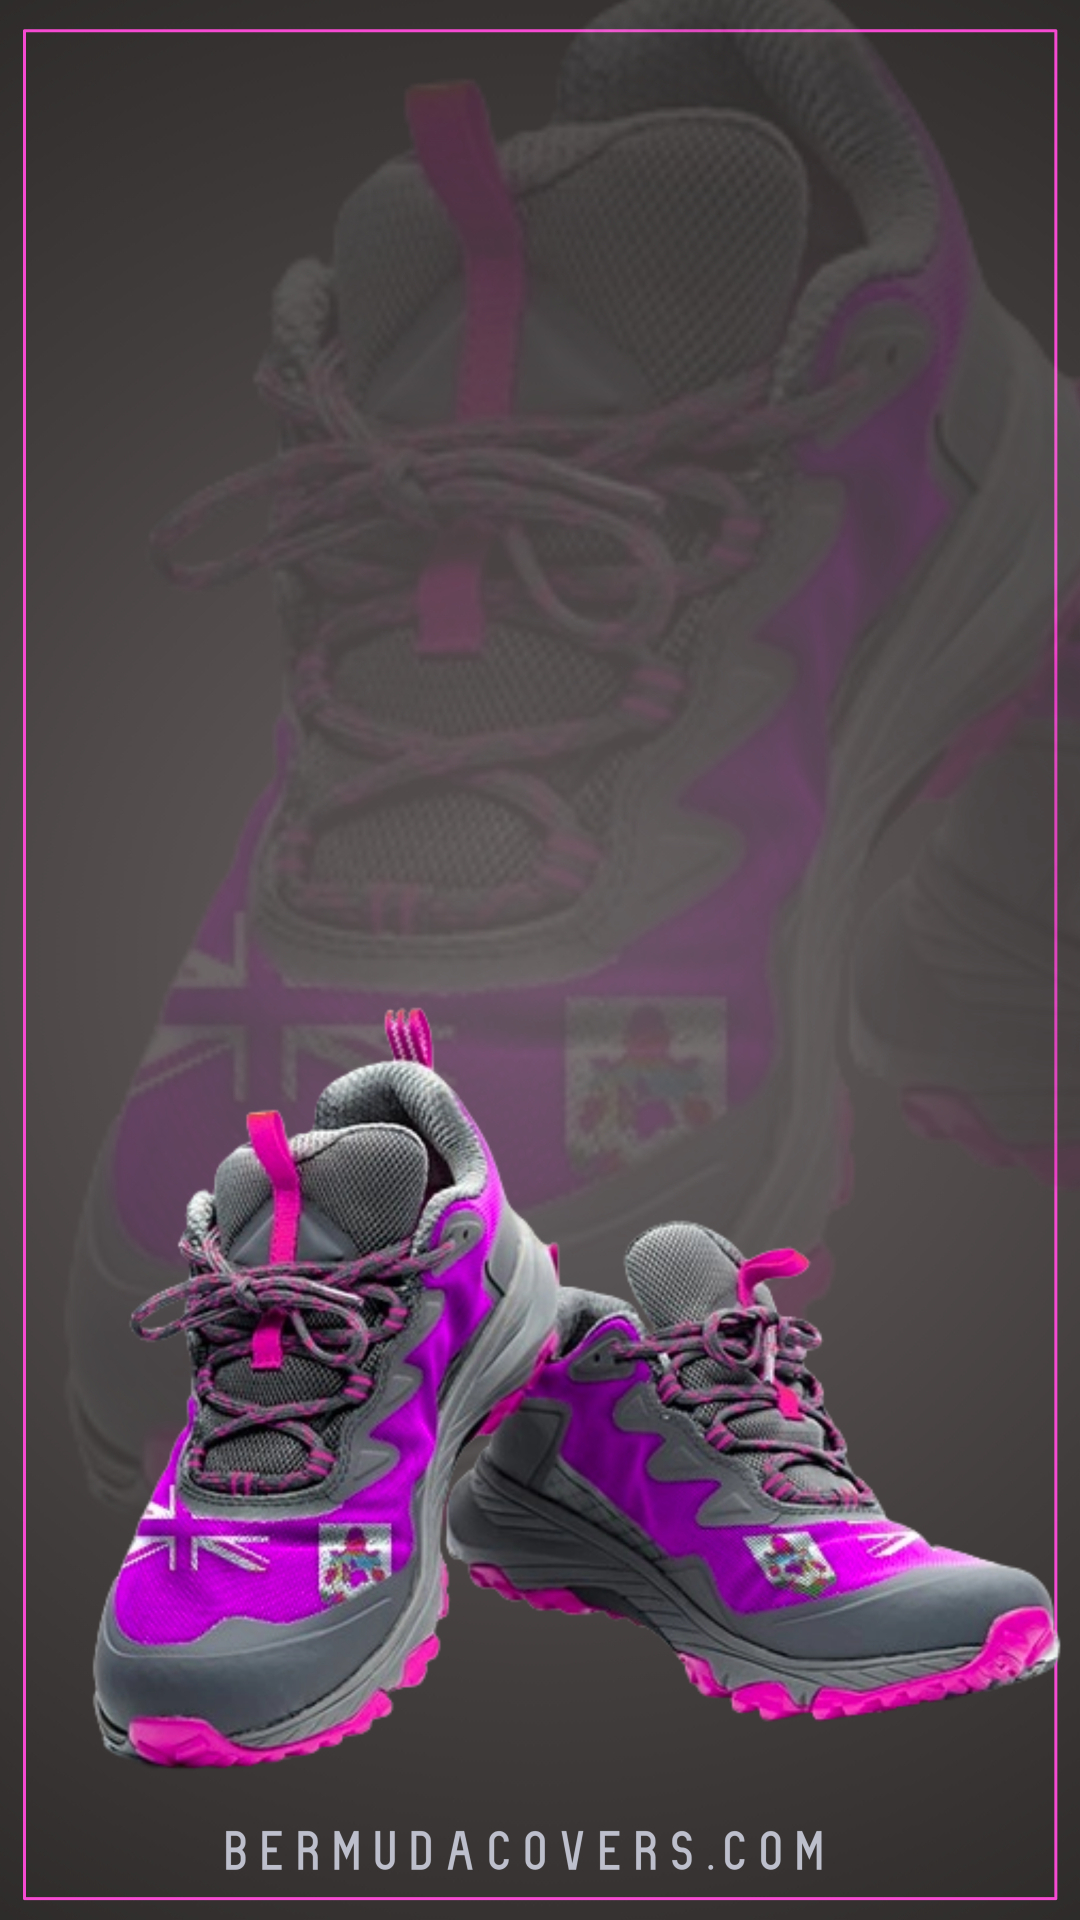 Just for kicks pink Bermuda sneakers social media graphic cover 43532532 (2)